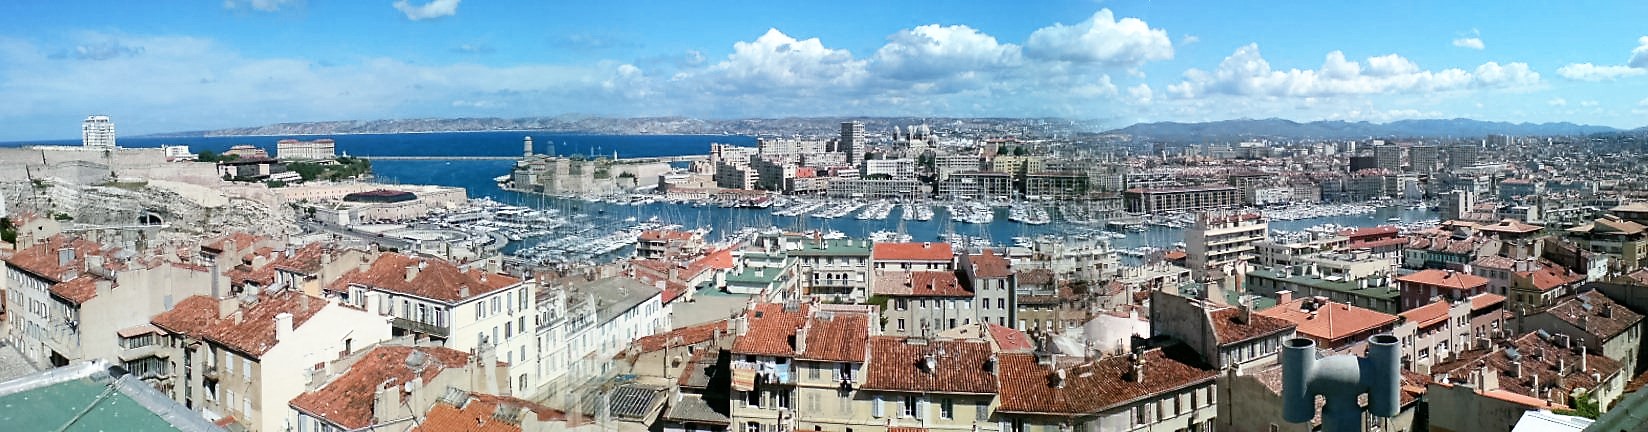 8.4 Vieux Port Marseille